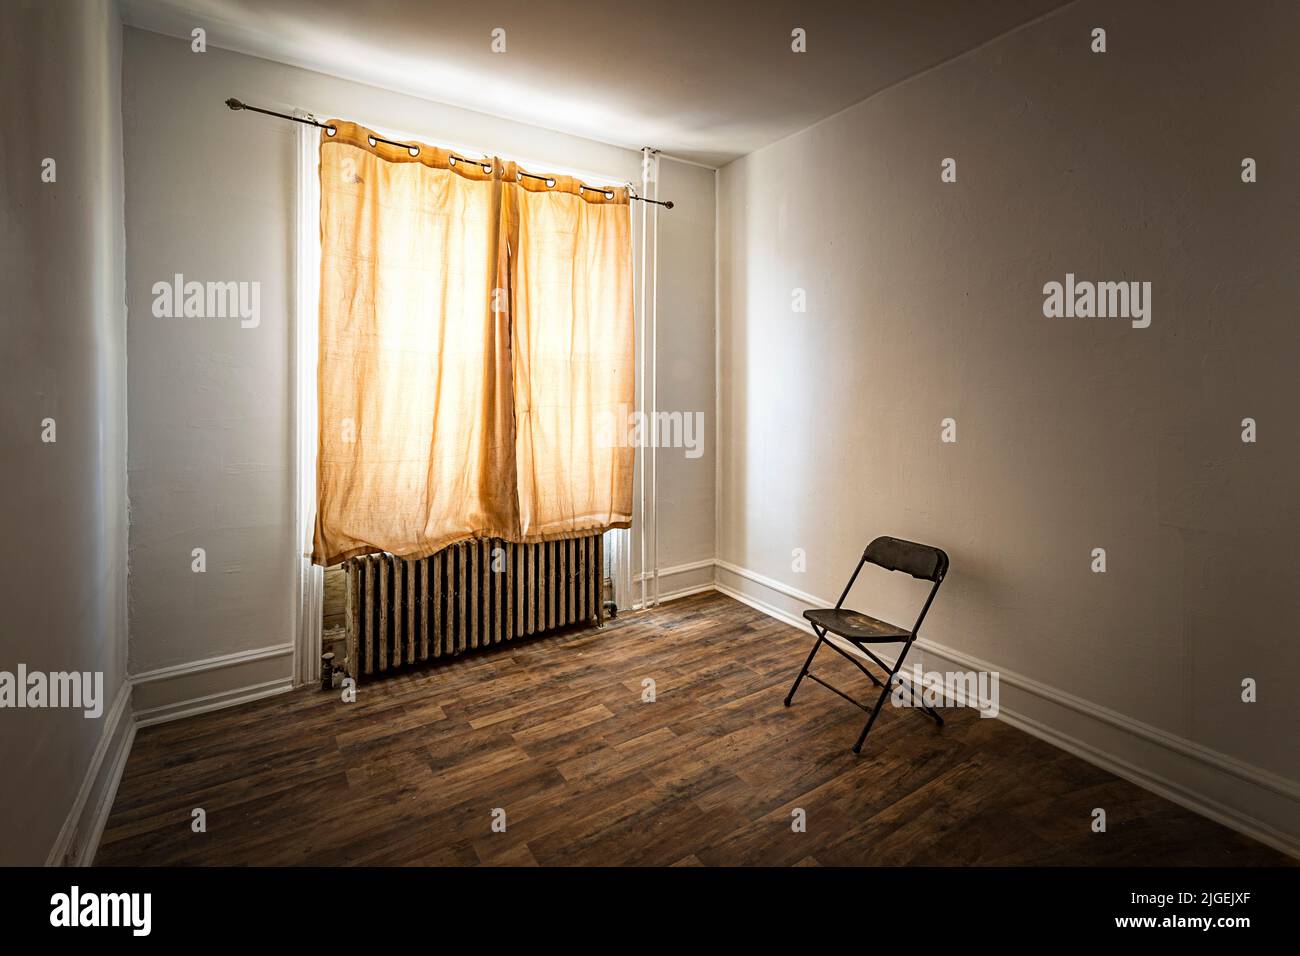 Vergilbter Vorhang in einem heruntergekommenen Zimmer mit einarmigtem Stuhl Stockfoto